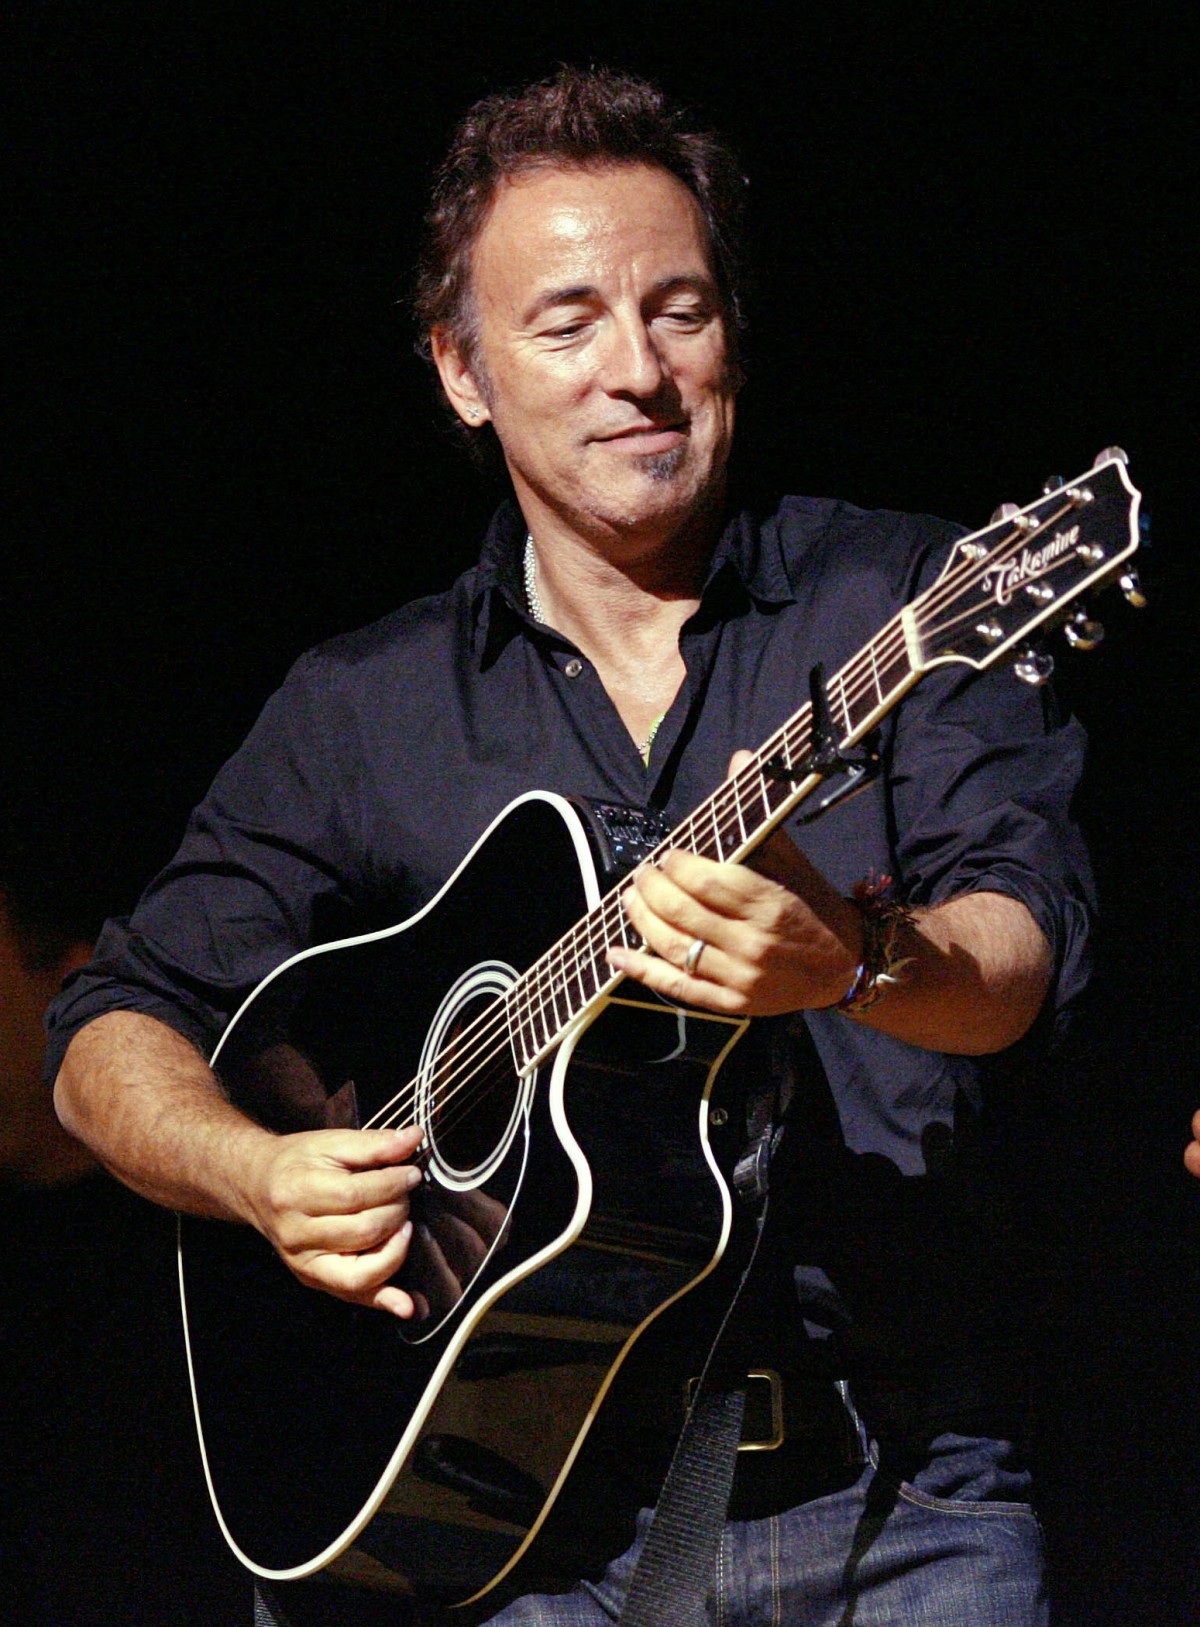 Springsteen in Italia, Barley Arts diffida i siti secondary ticketing. E annuncia un esposto in Procura